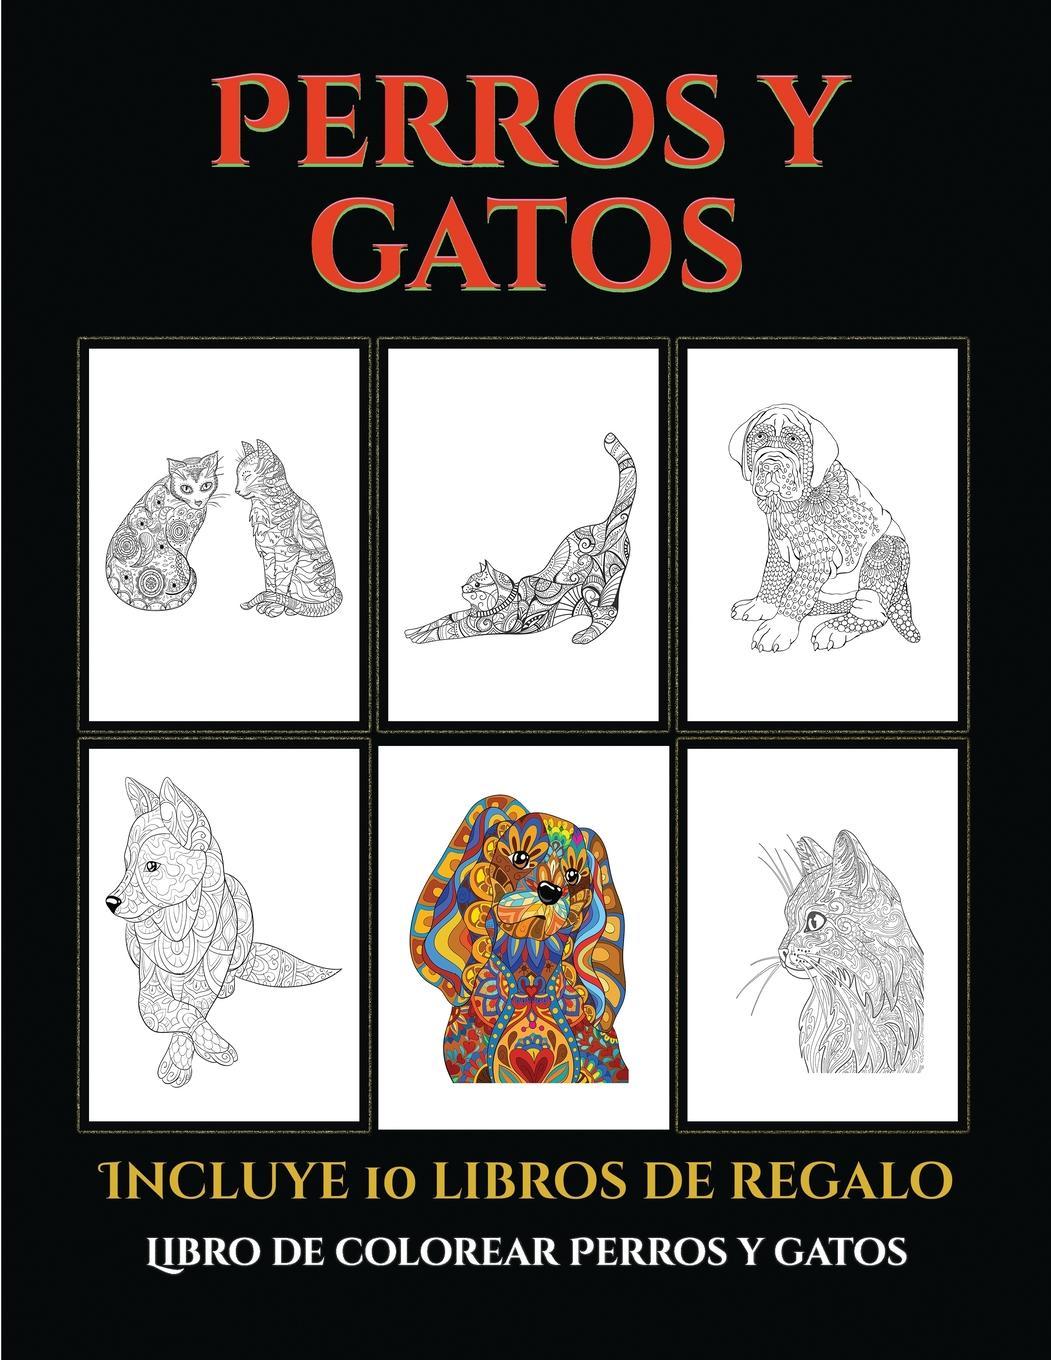 Libro de colorear Perros y gatos (Perros y gatos) - Santiago, Garcia